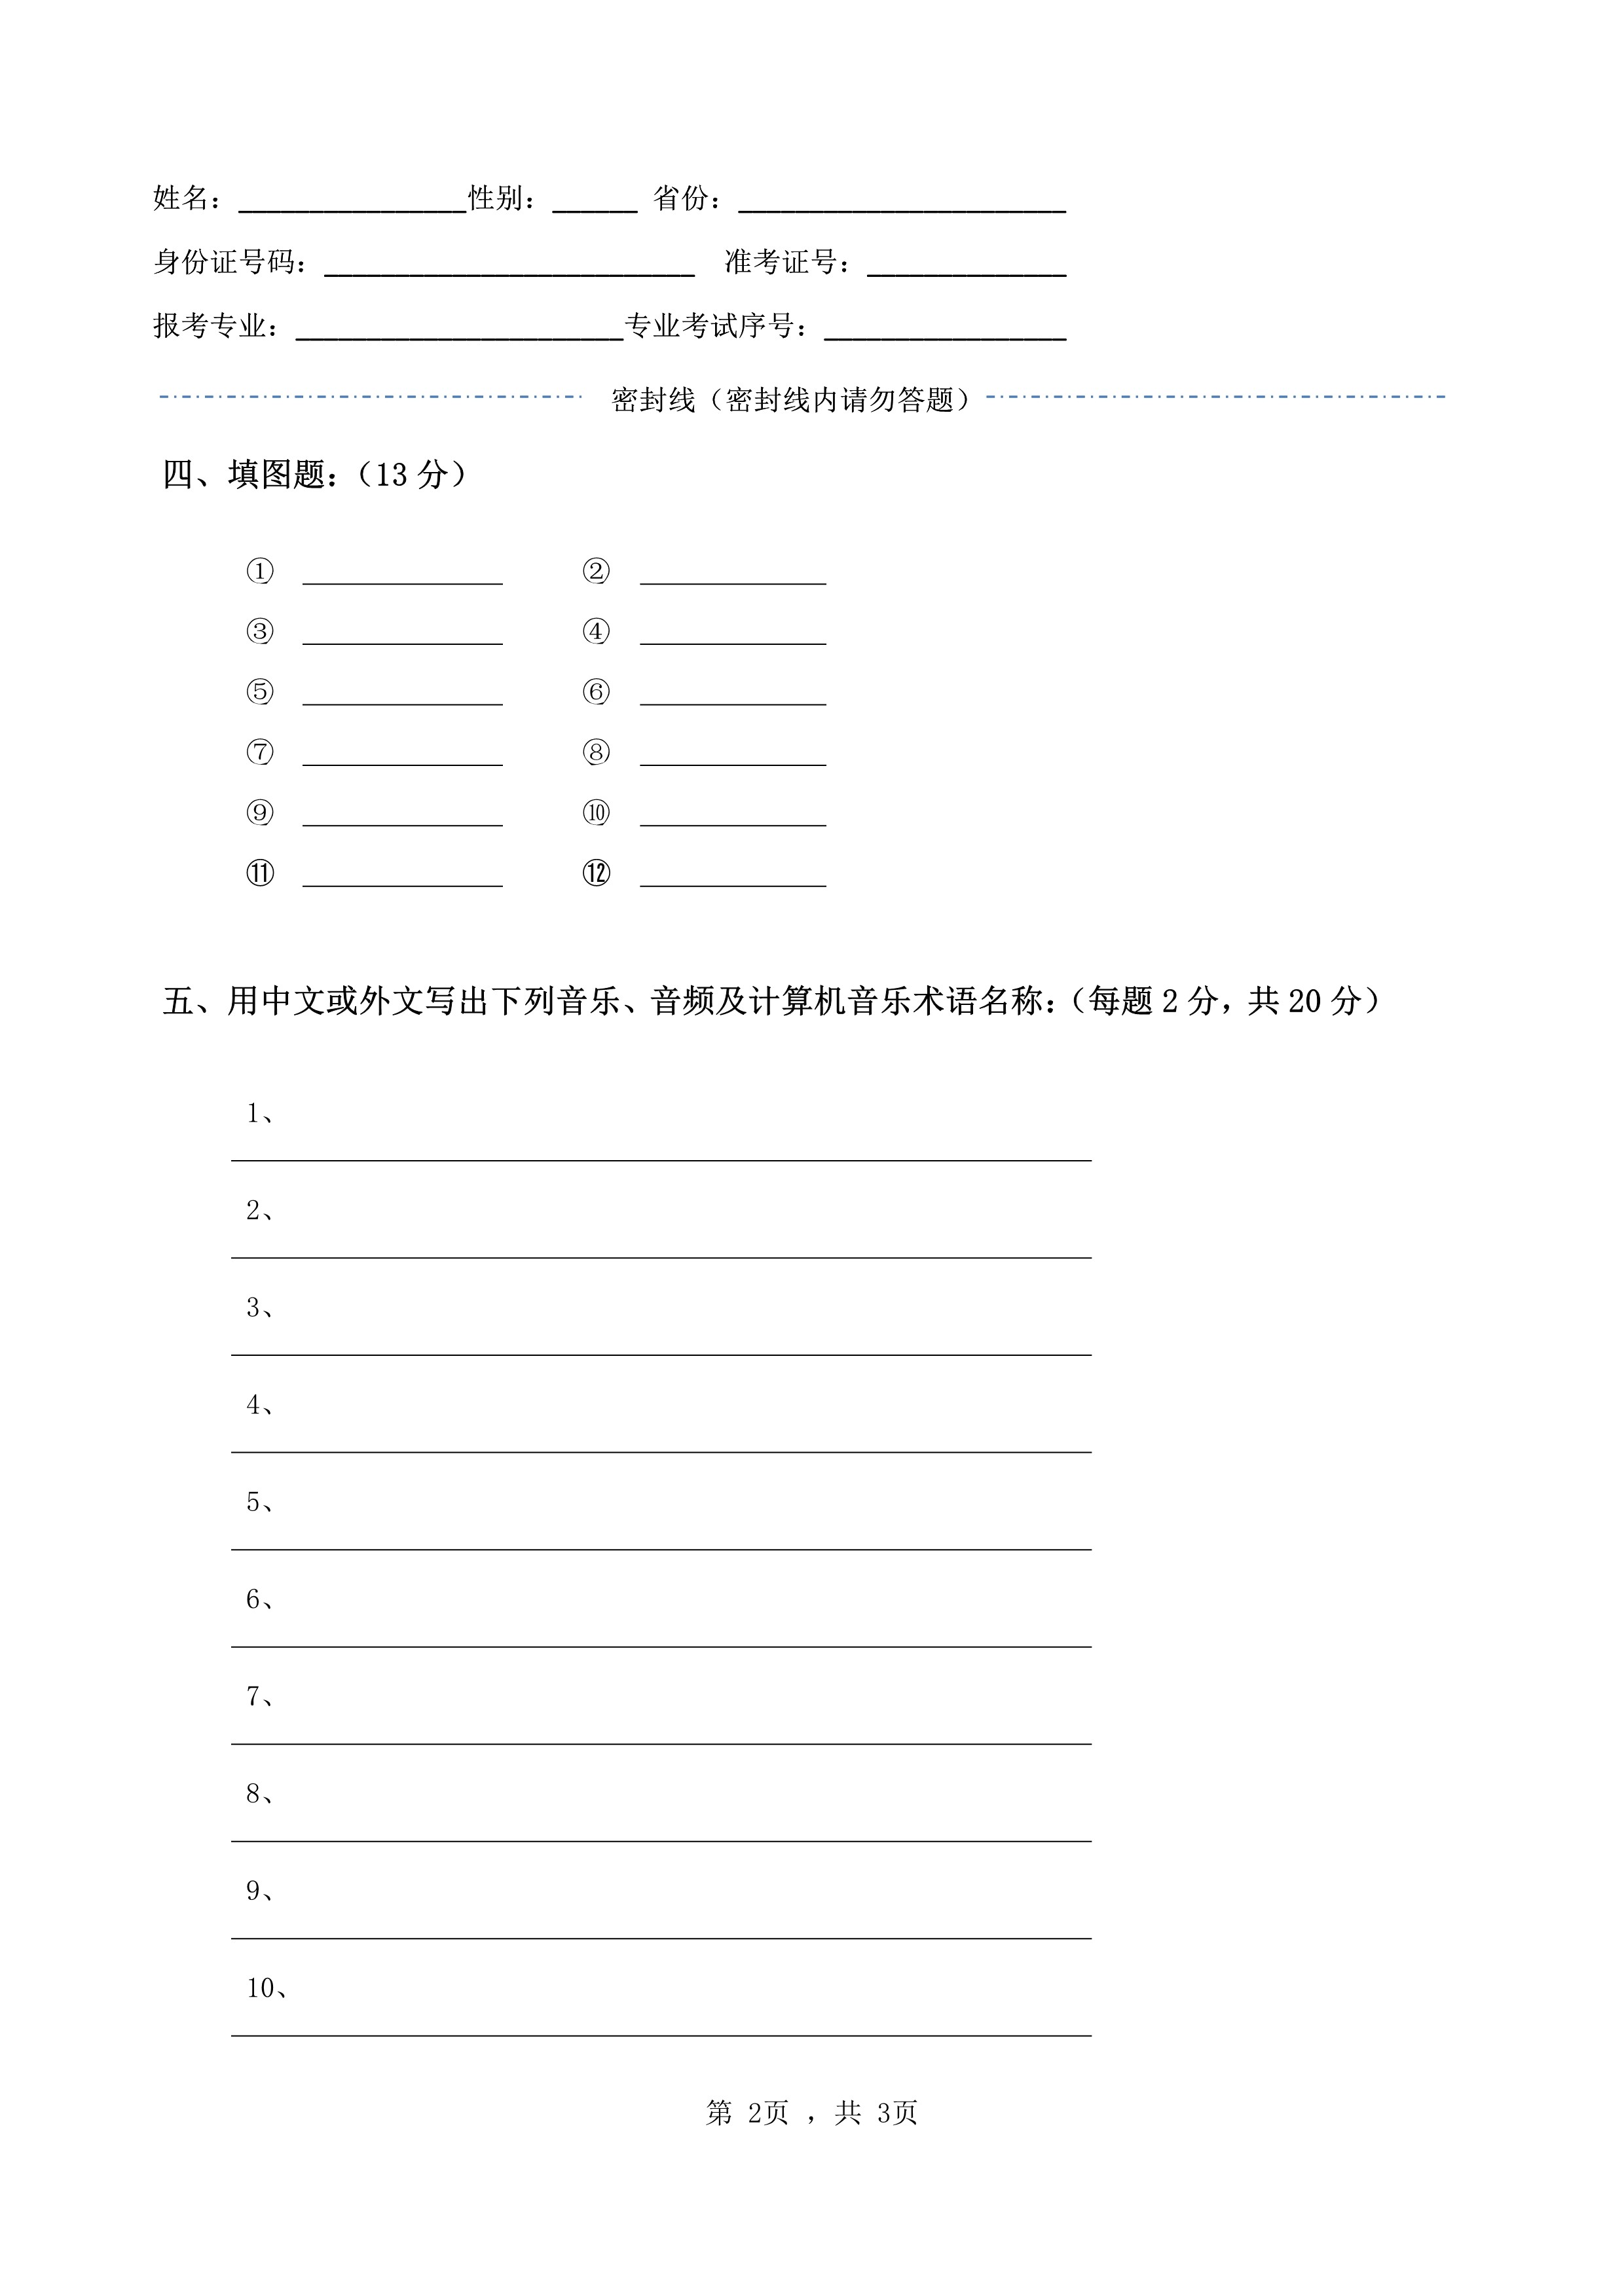 南京艺术学院2022年本科招生录音艺术专业《声学常识》科目考试答题纸及草稿纸_2.jpg